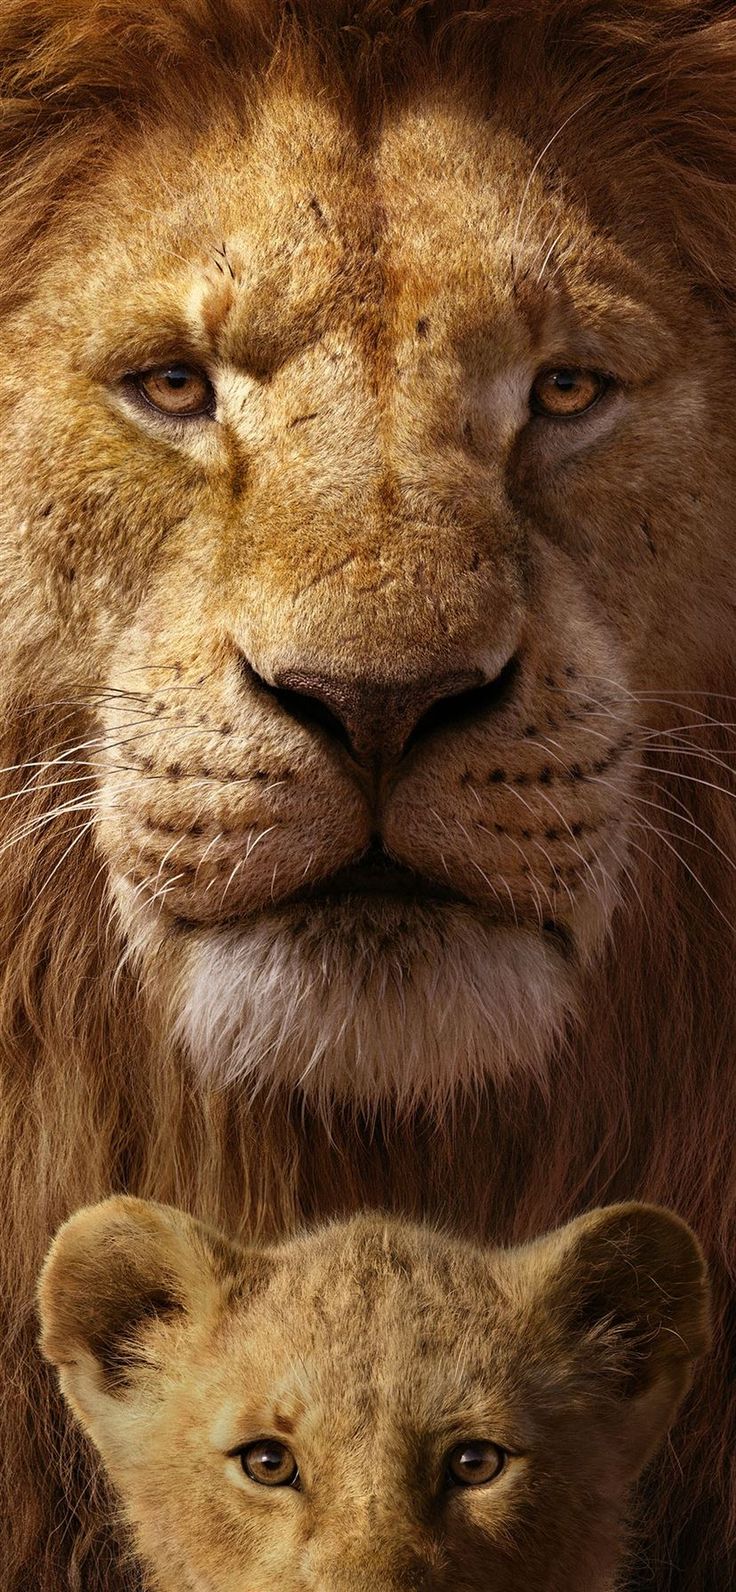 charlie baltazar share lion movie free download photos